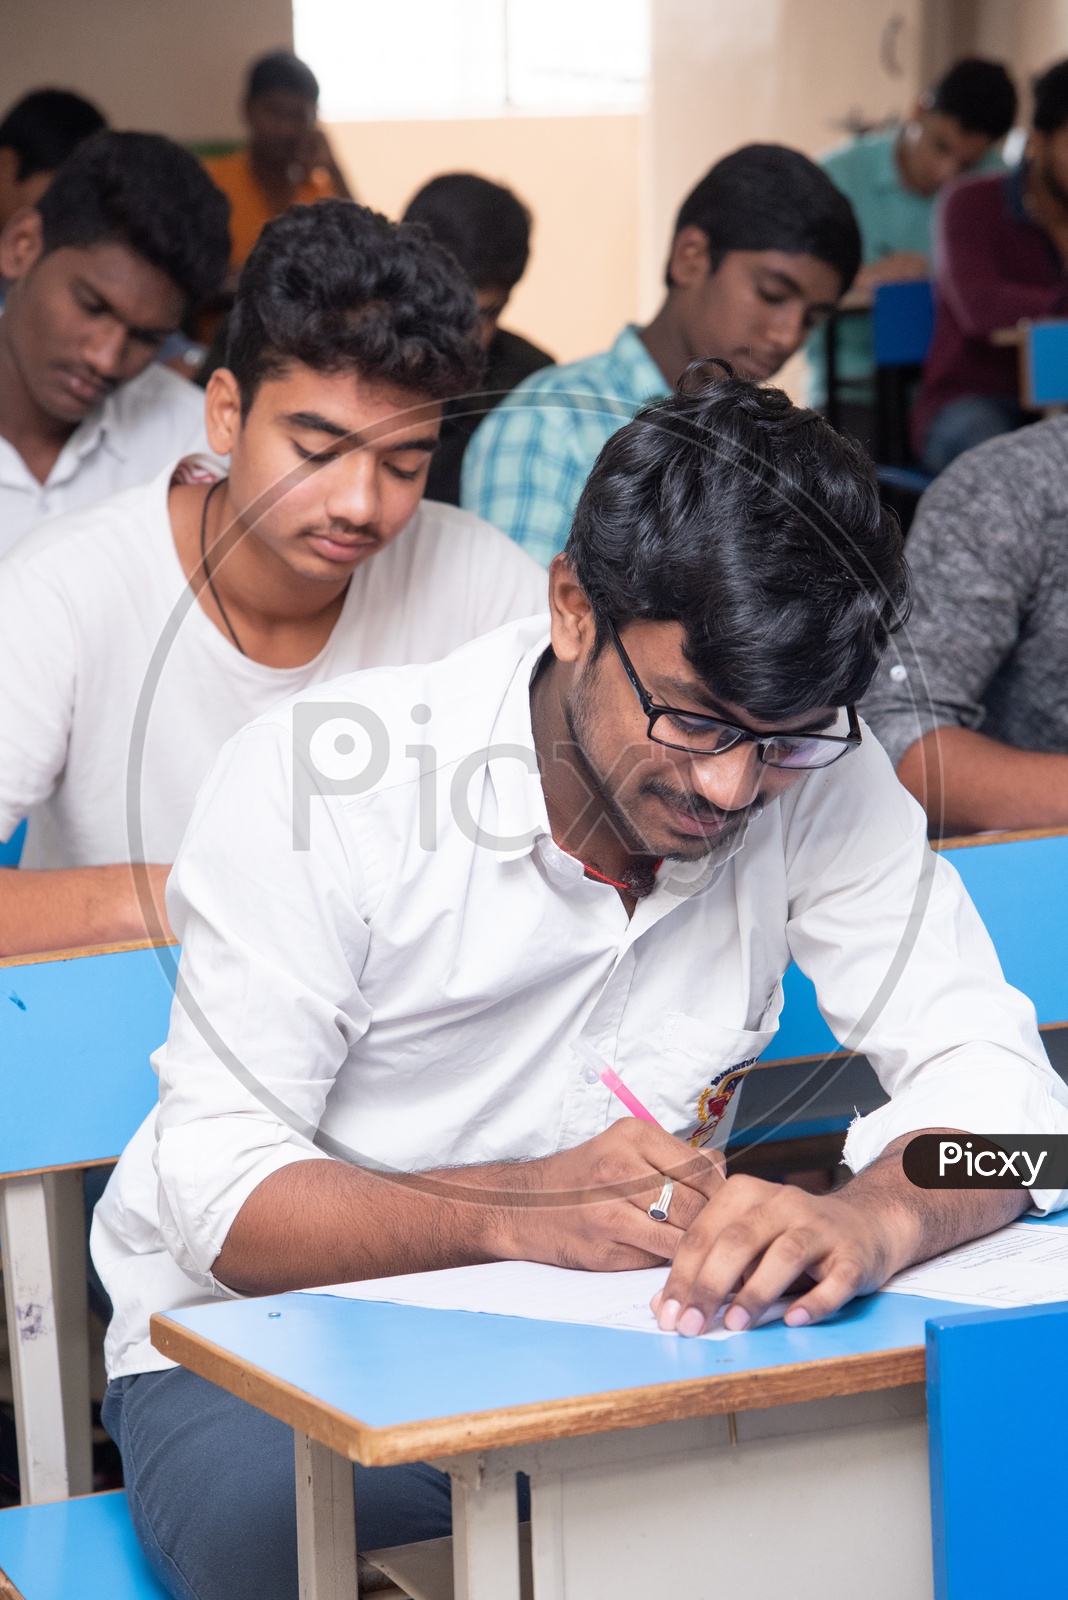 Student writing exam